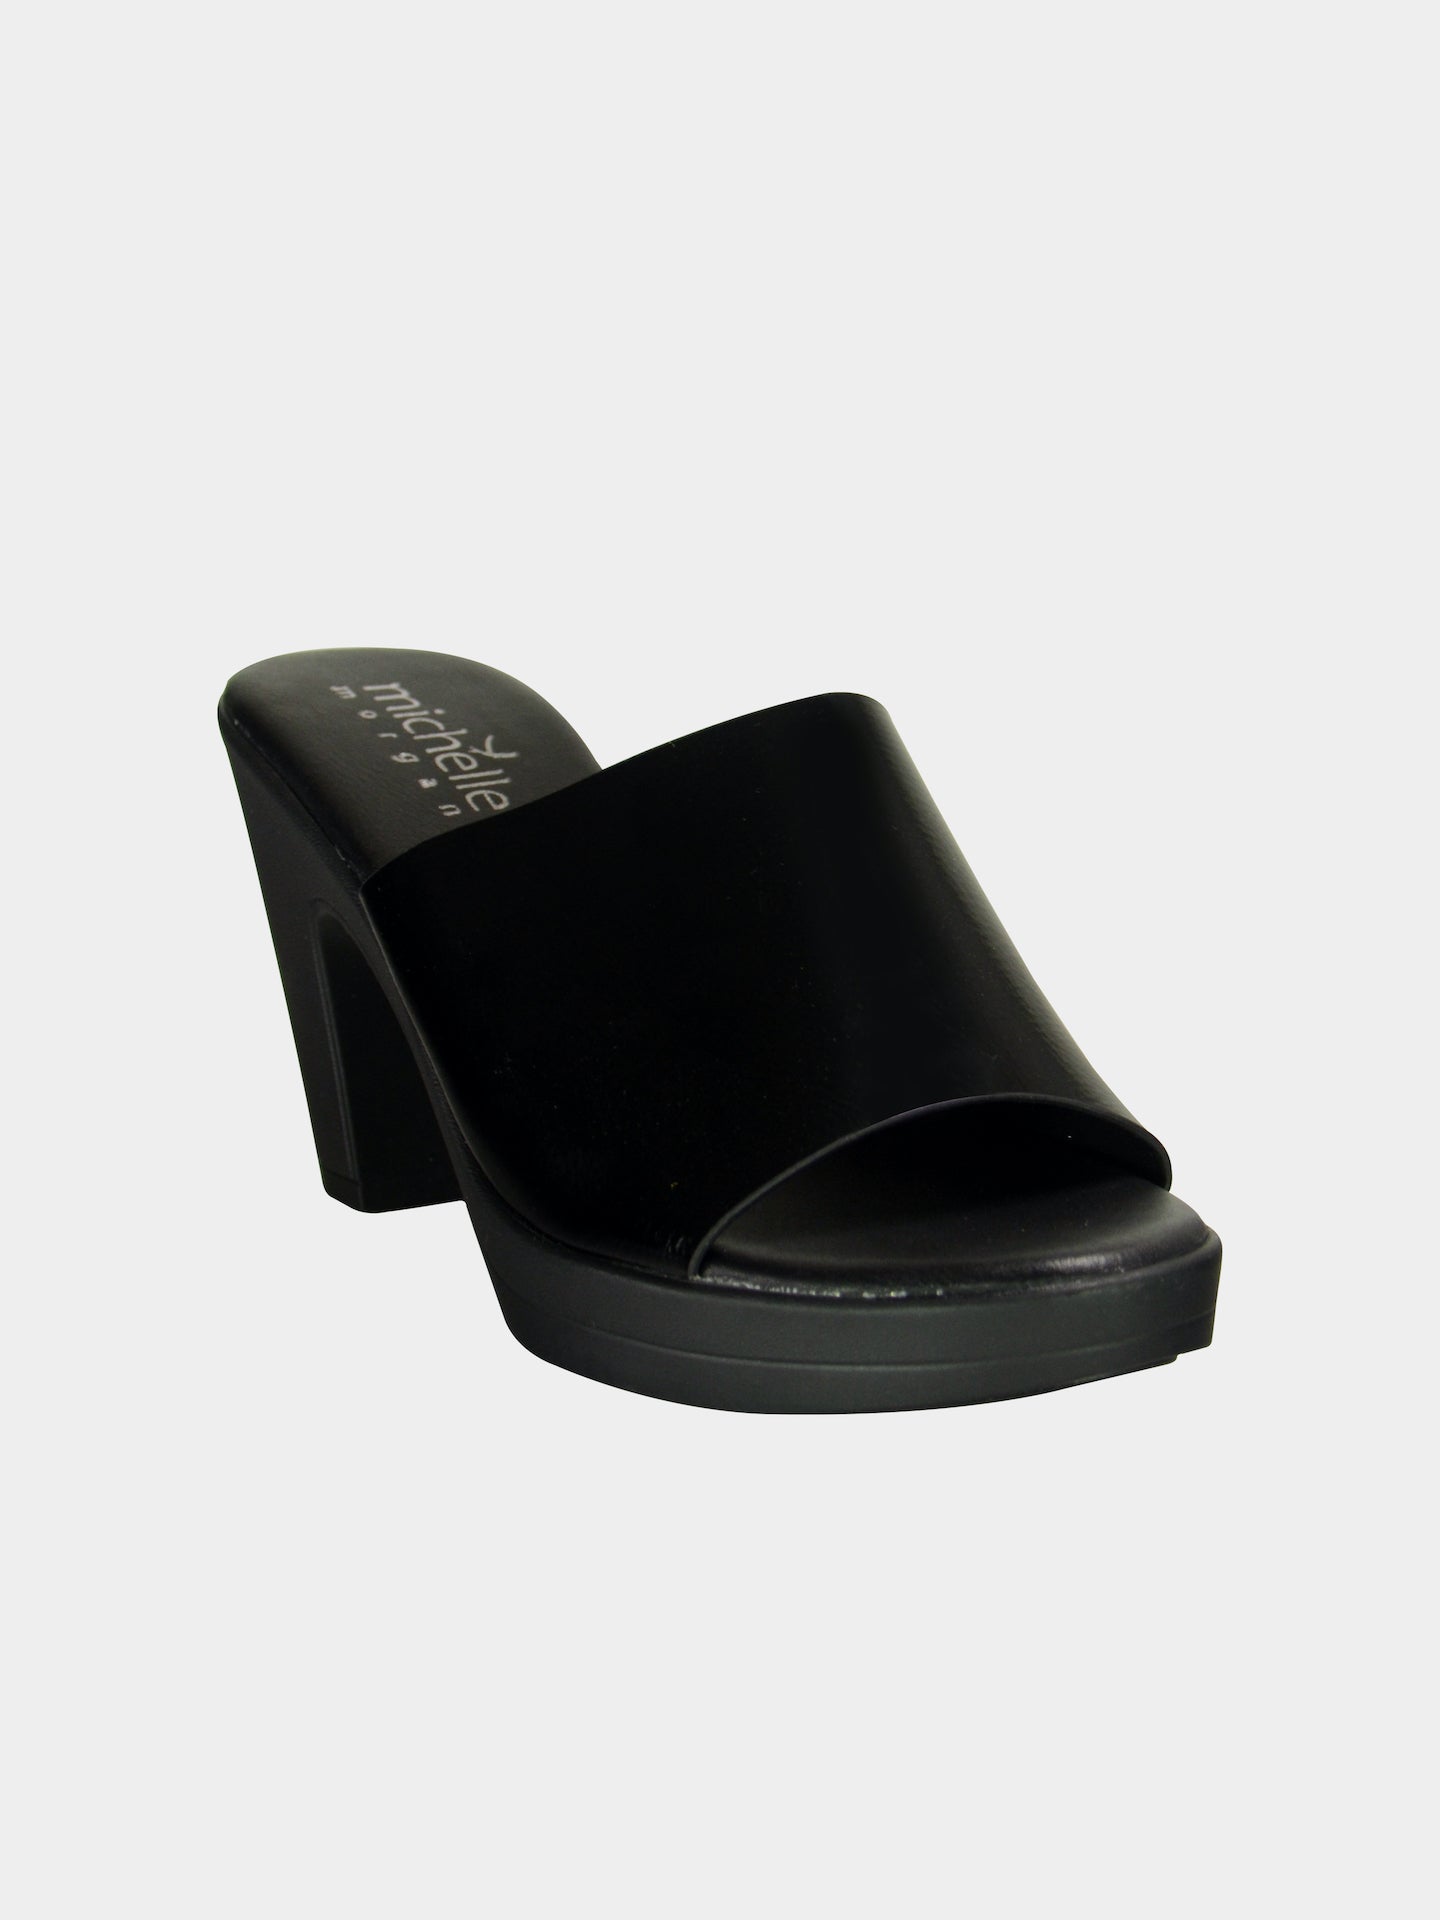 Michelle Morgan 913RJ166 Women's Heeled Sandals #color_Black